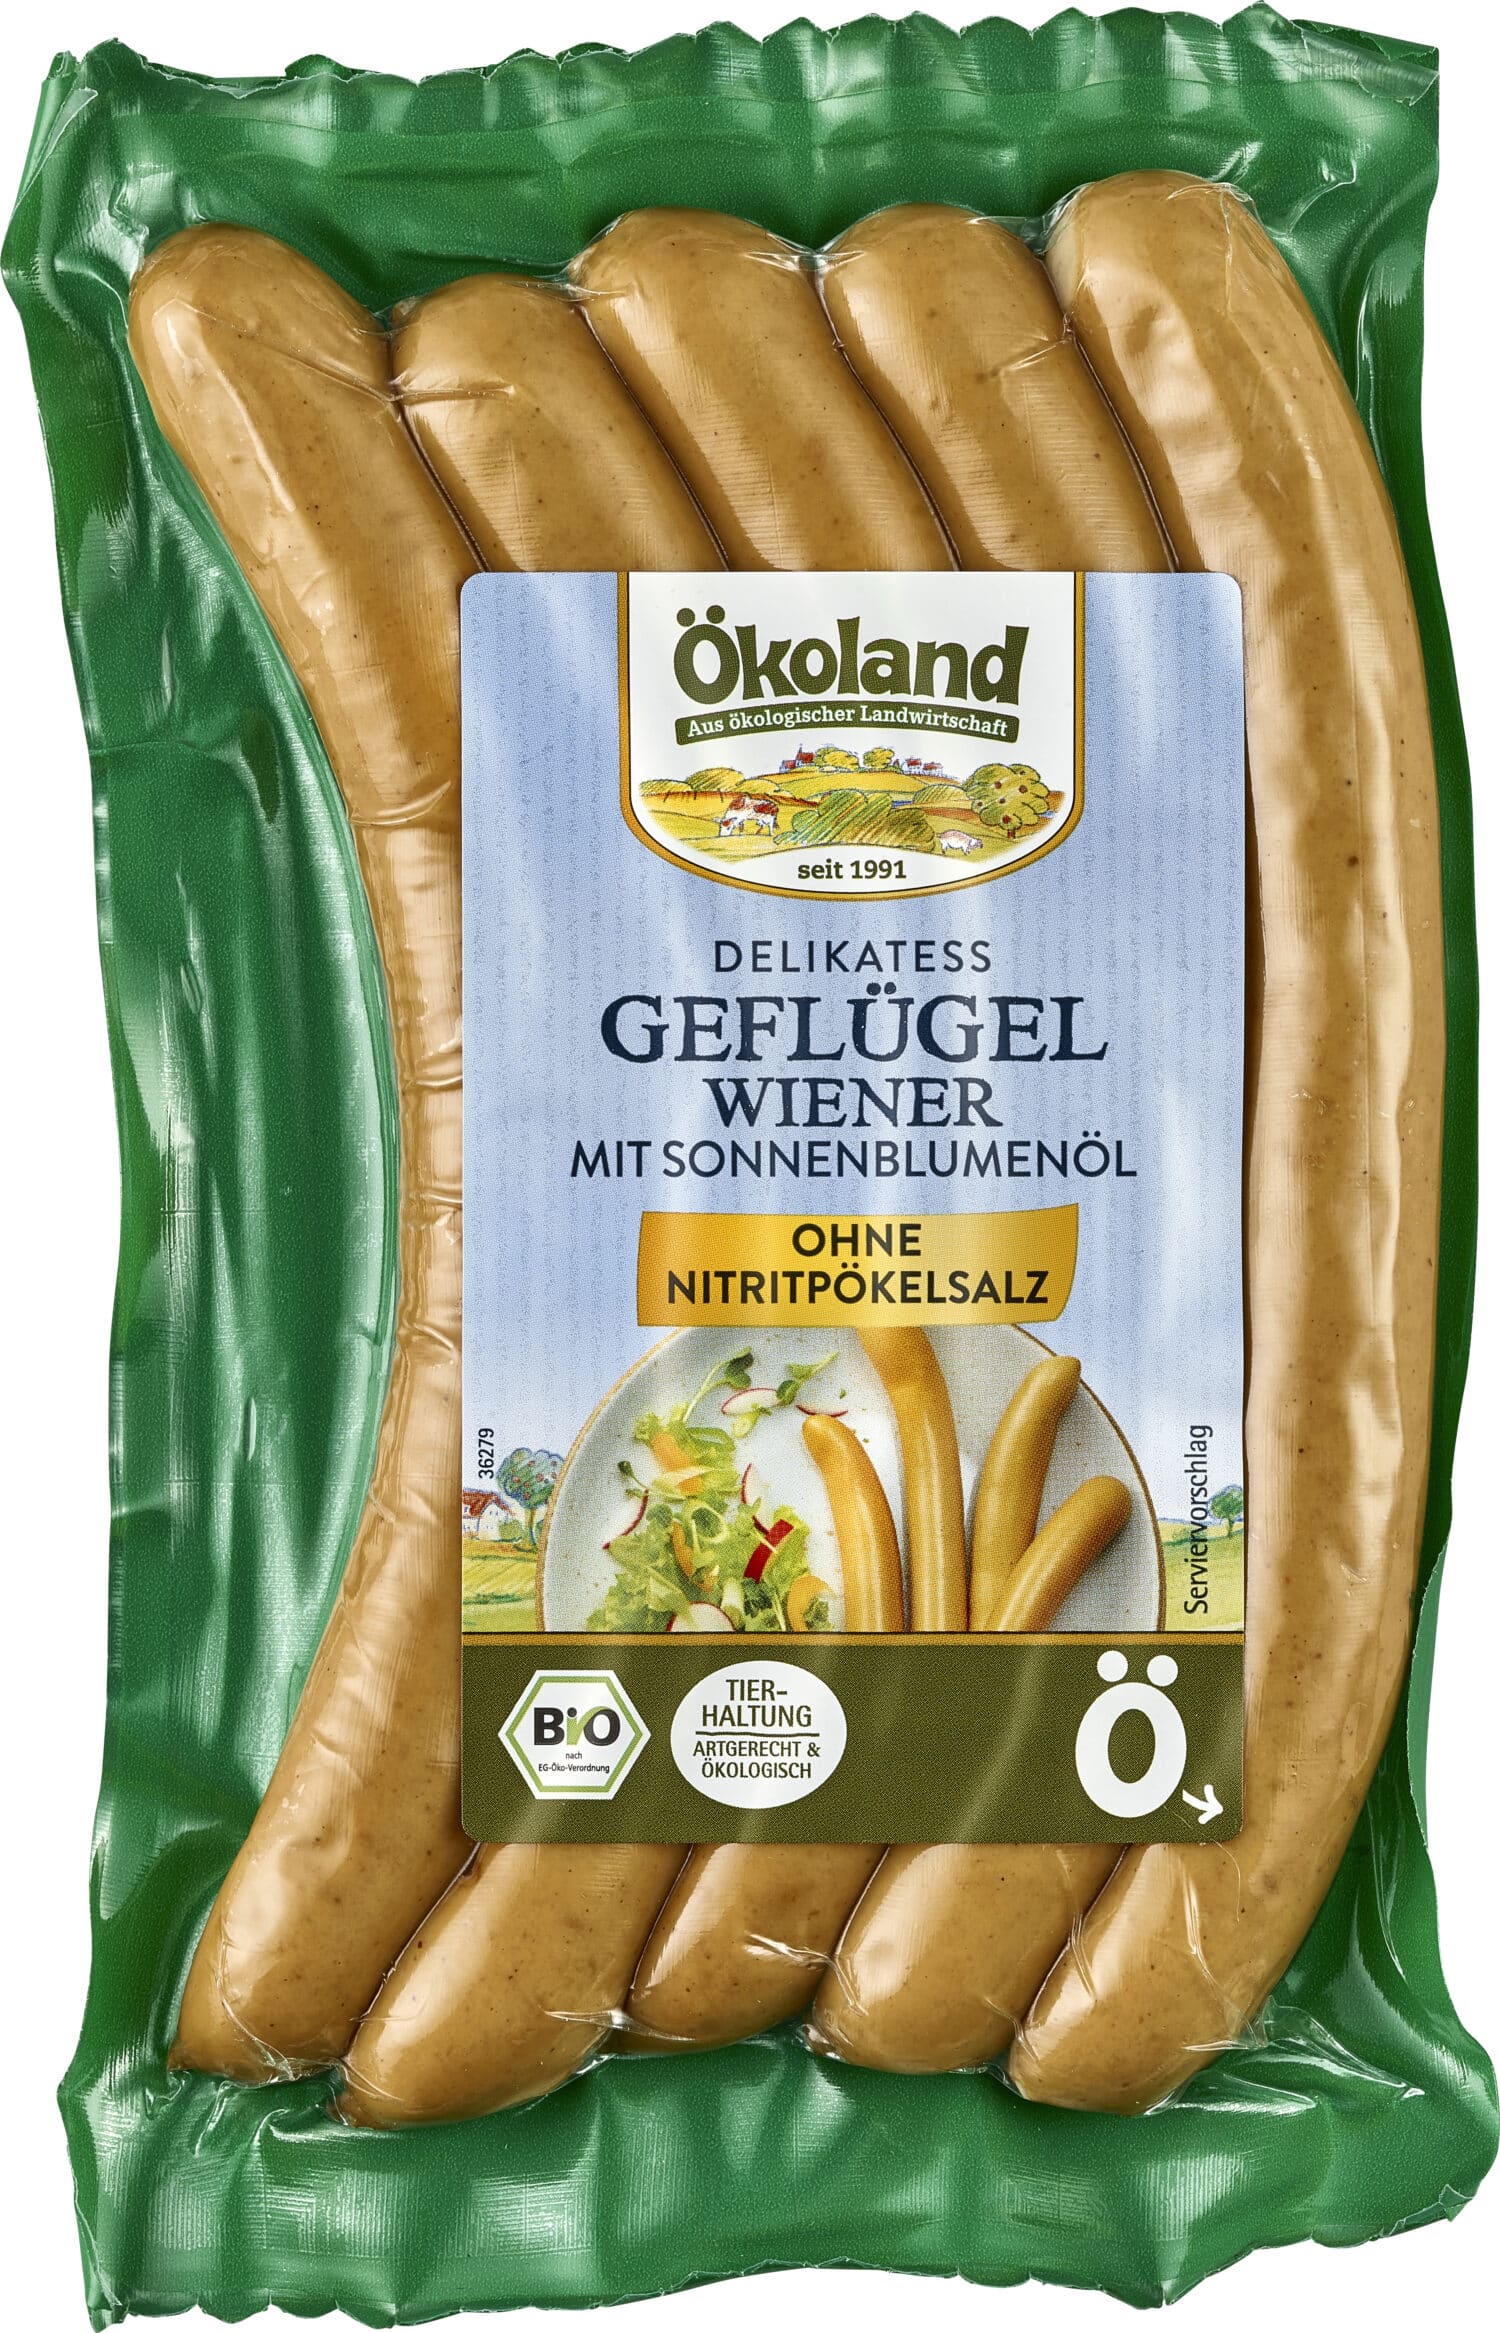 Geflügel-Wiener mit Sonnenblumenöl in Delikatess-Qualität